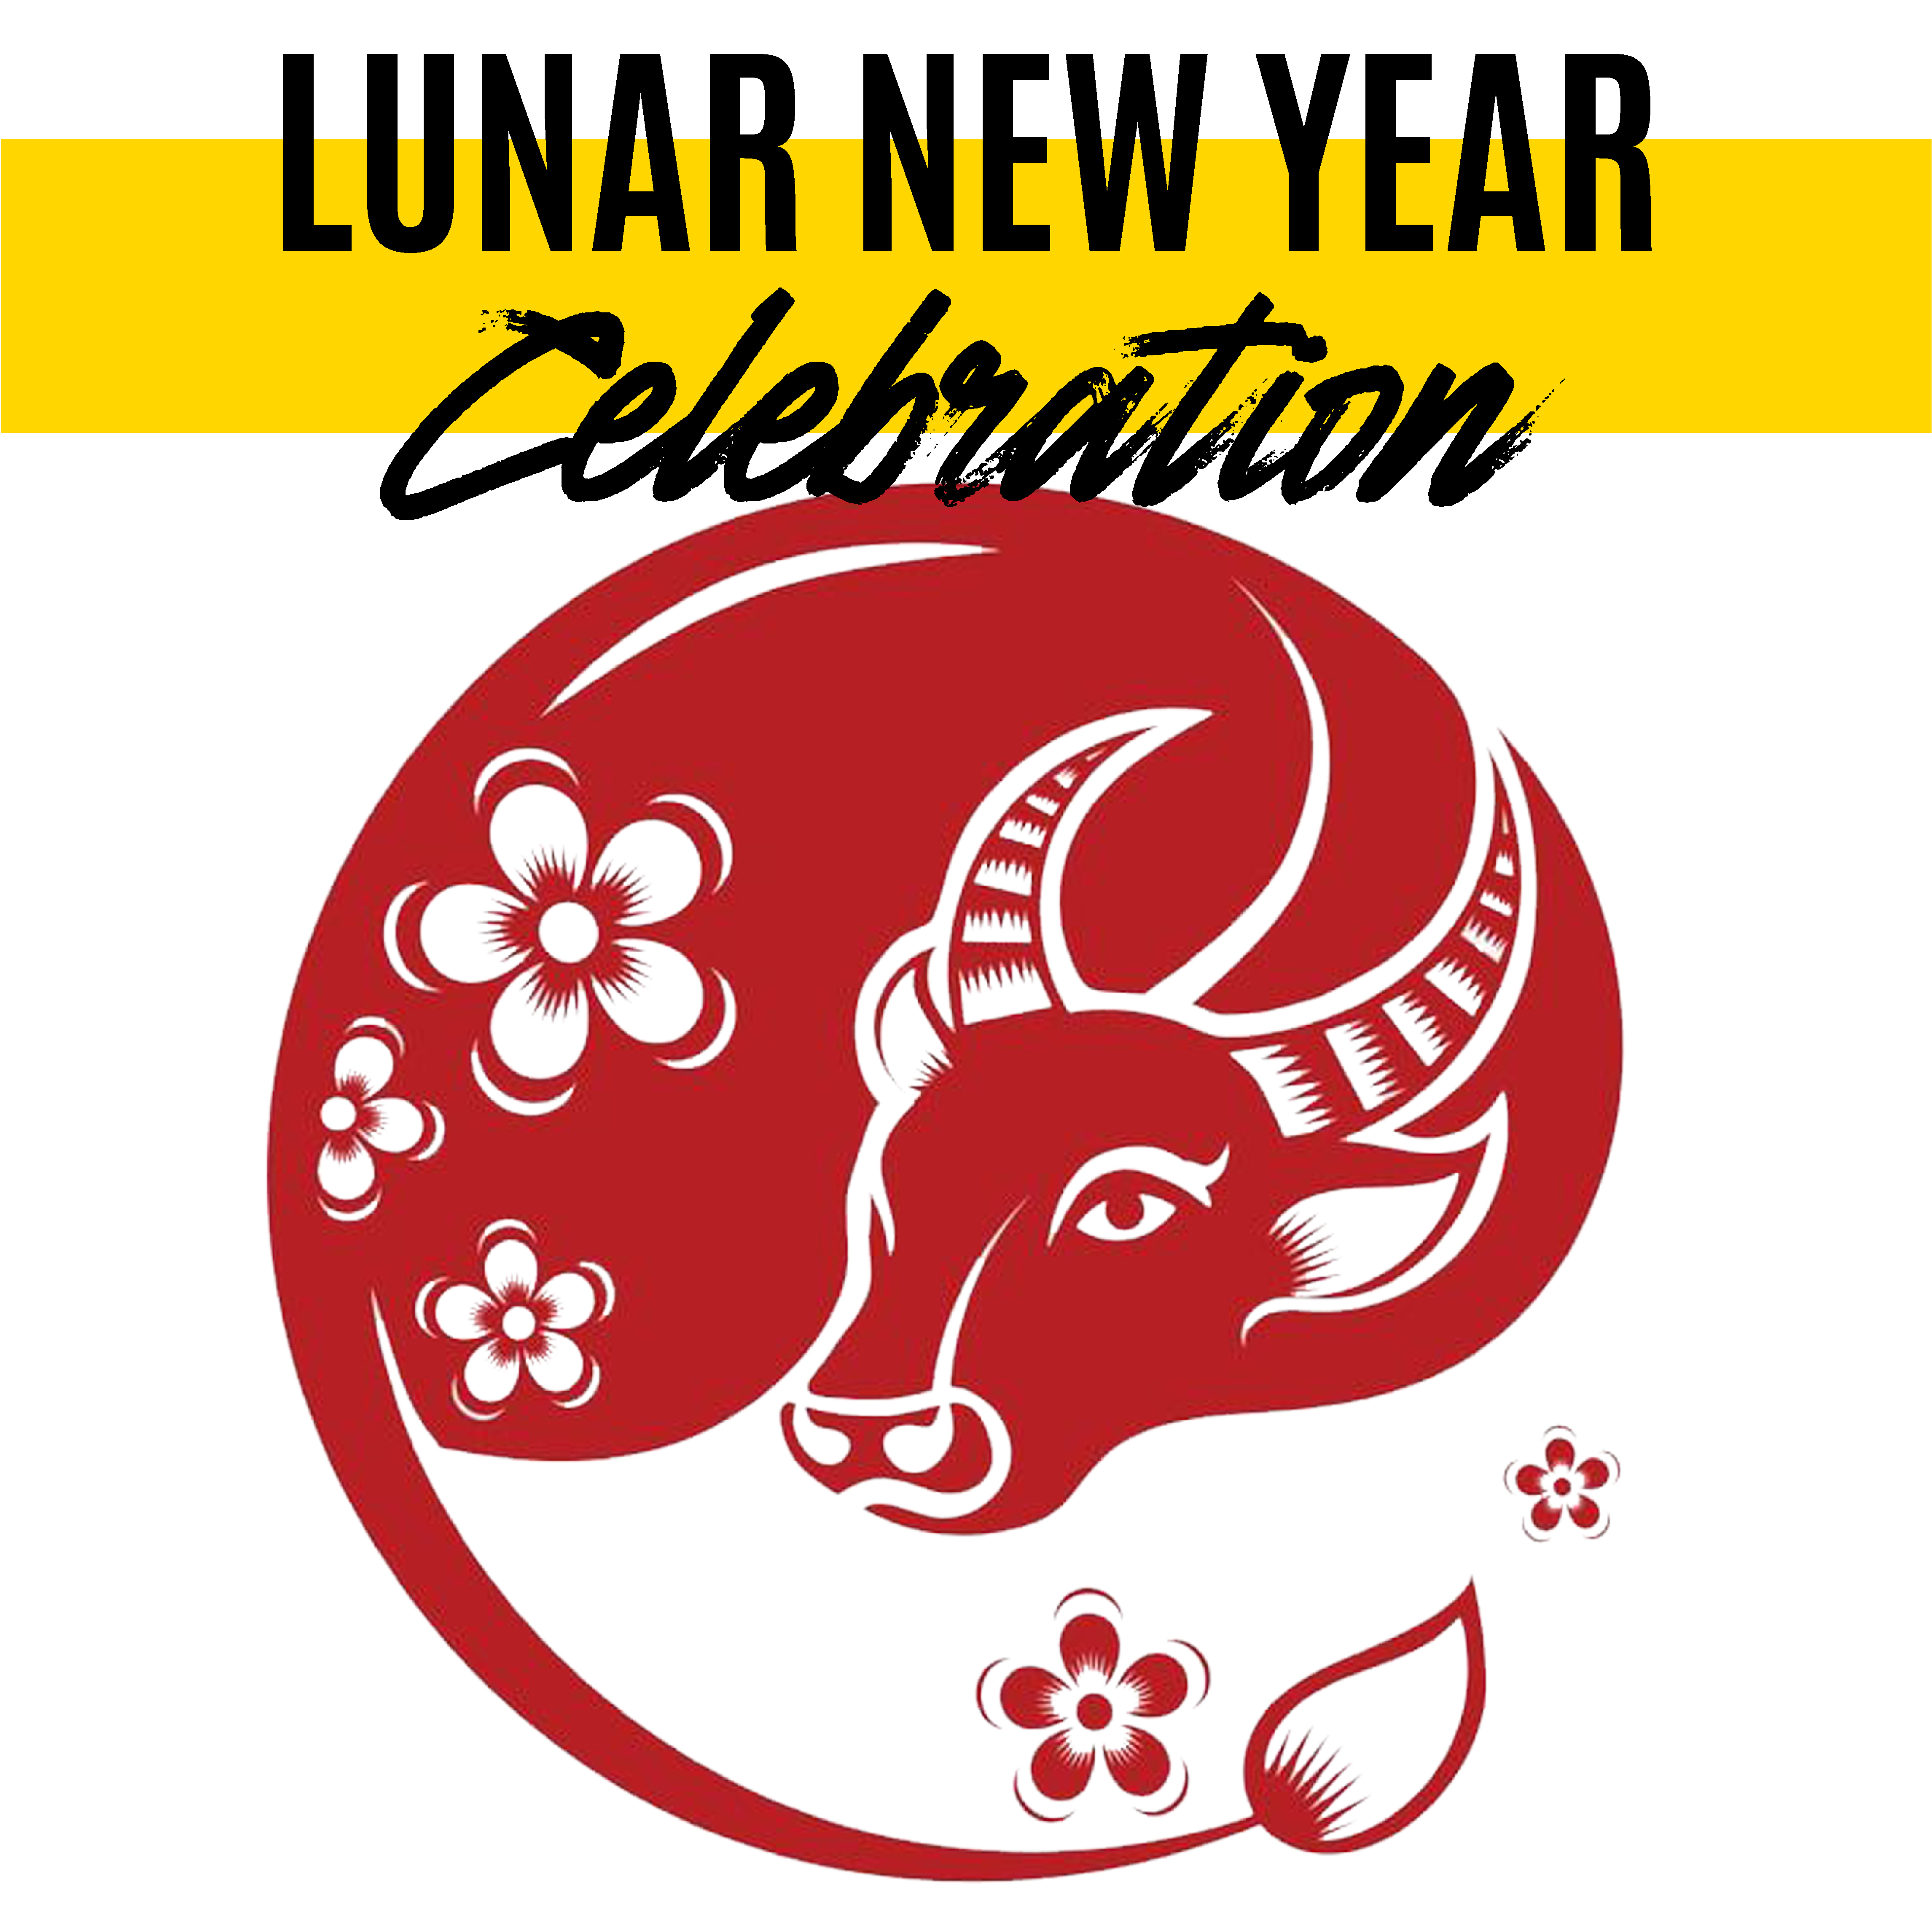 Lunar New Year Celebration February 11